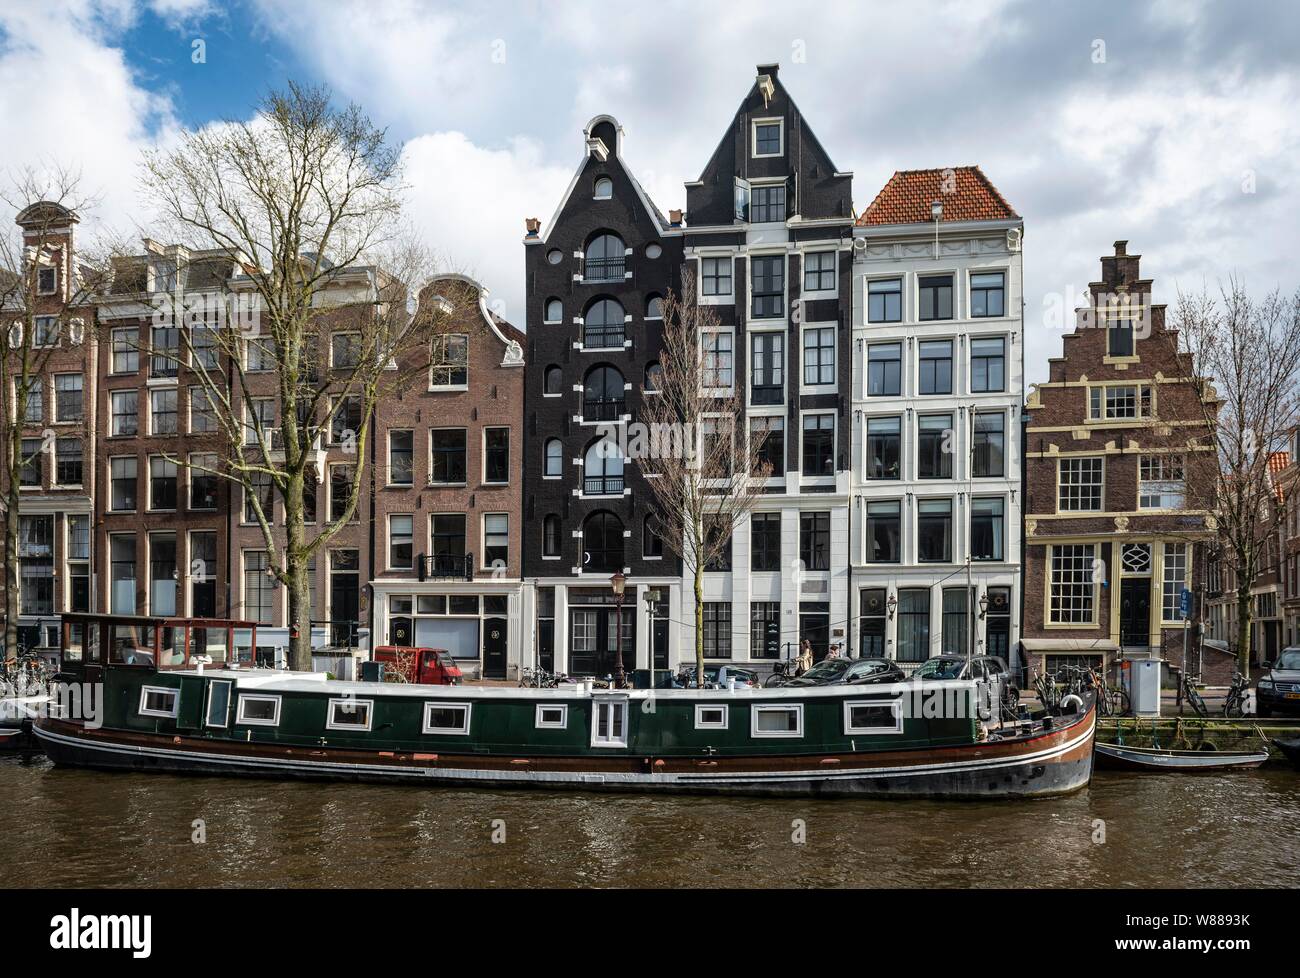 Canal avec péniche et maisons historiques, Amsterdam, Hollande du Nord, Hollande, Pays-Bas Banque D'Images